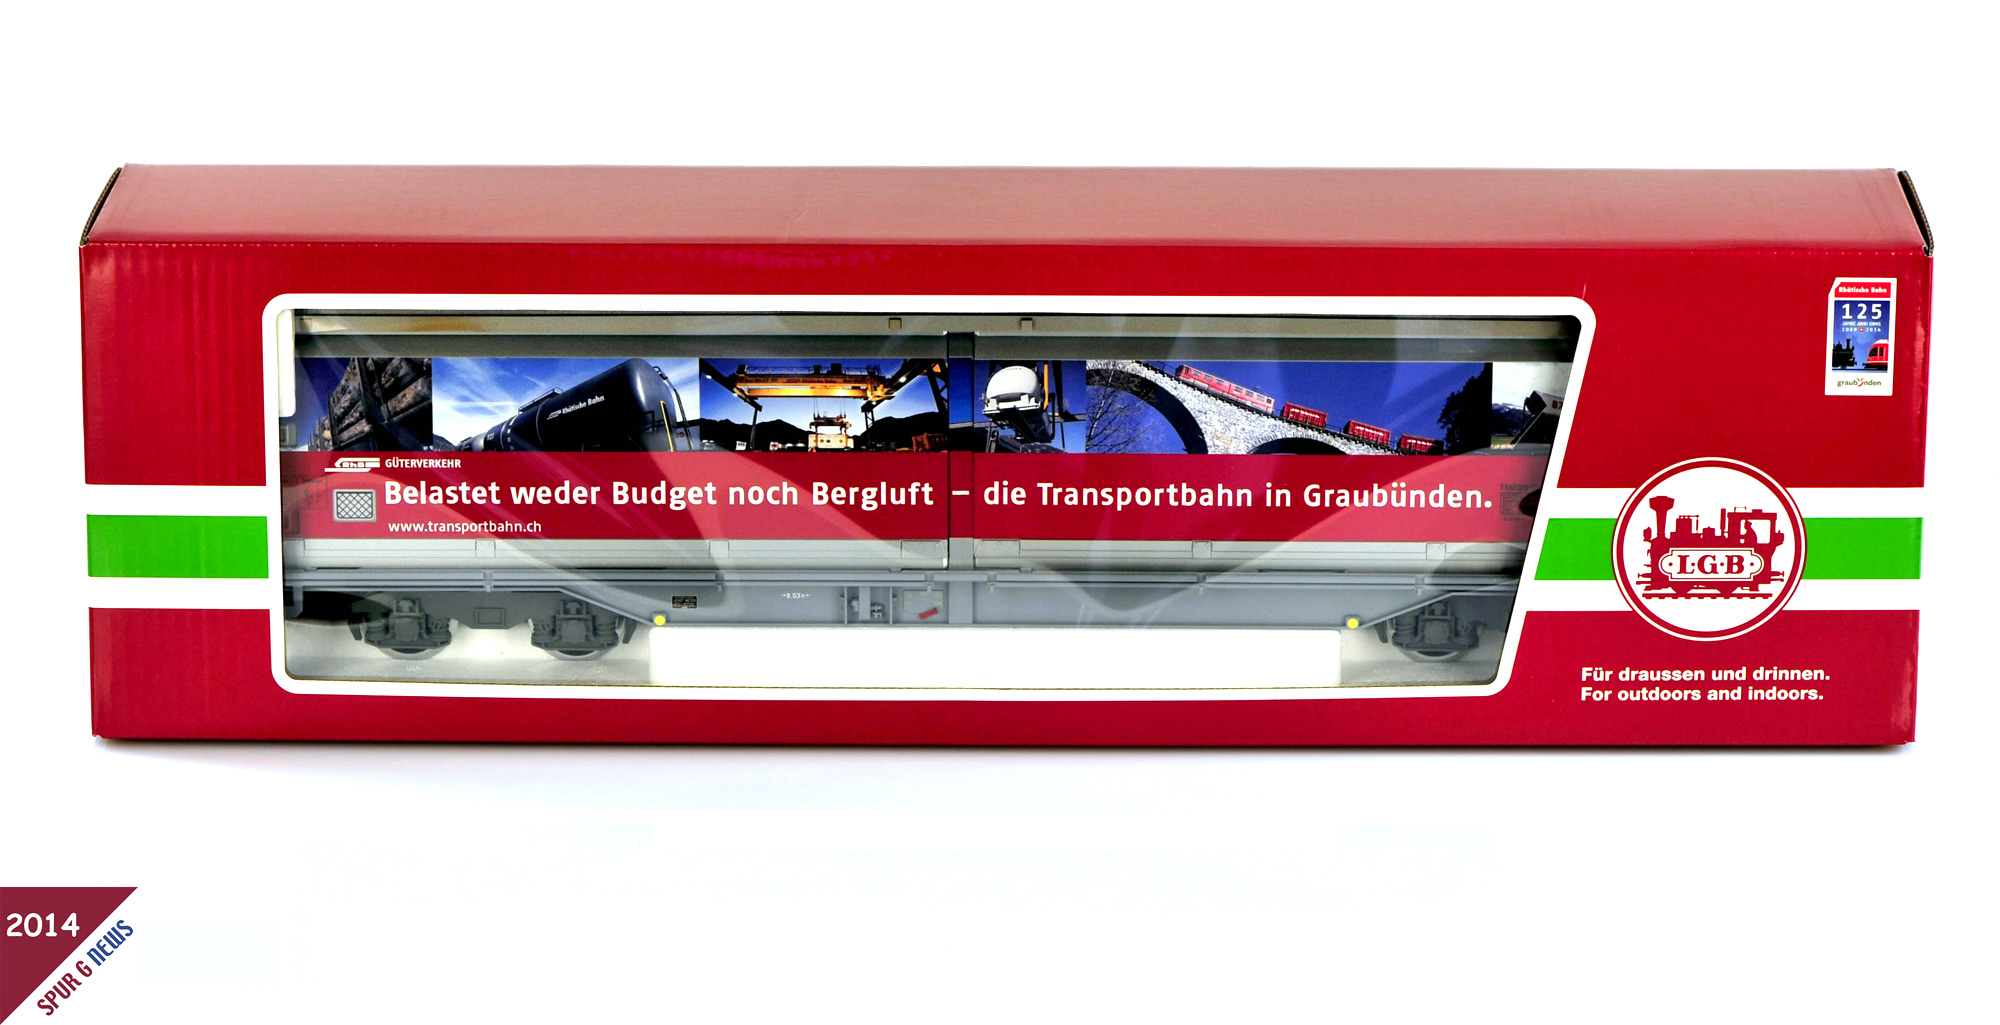 LGB Modell Art. Nr. 47572 - Schiebewandwagen der RhB mit bahneigener Werbung ber die Transportbahn in Graubnden. Den Schiebewandwagen von LGB, Art.Nr. 47572 wird es nur als einmalige Produktion im Jahr 2014 geben. 